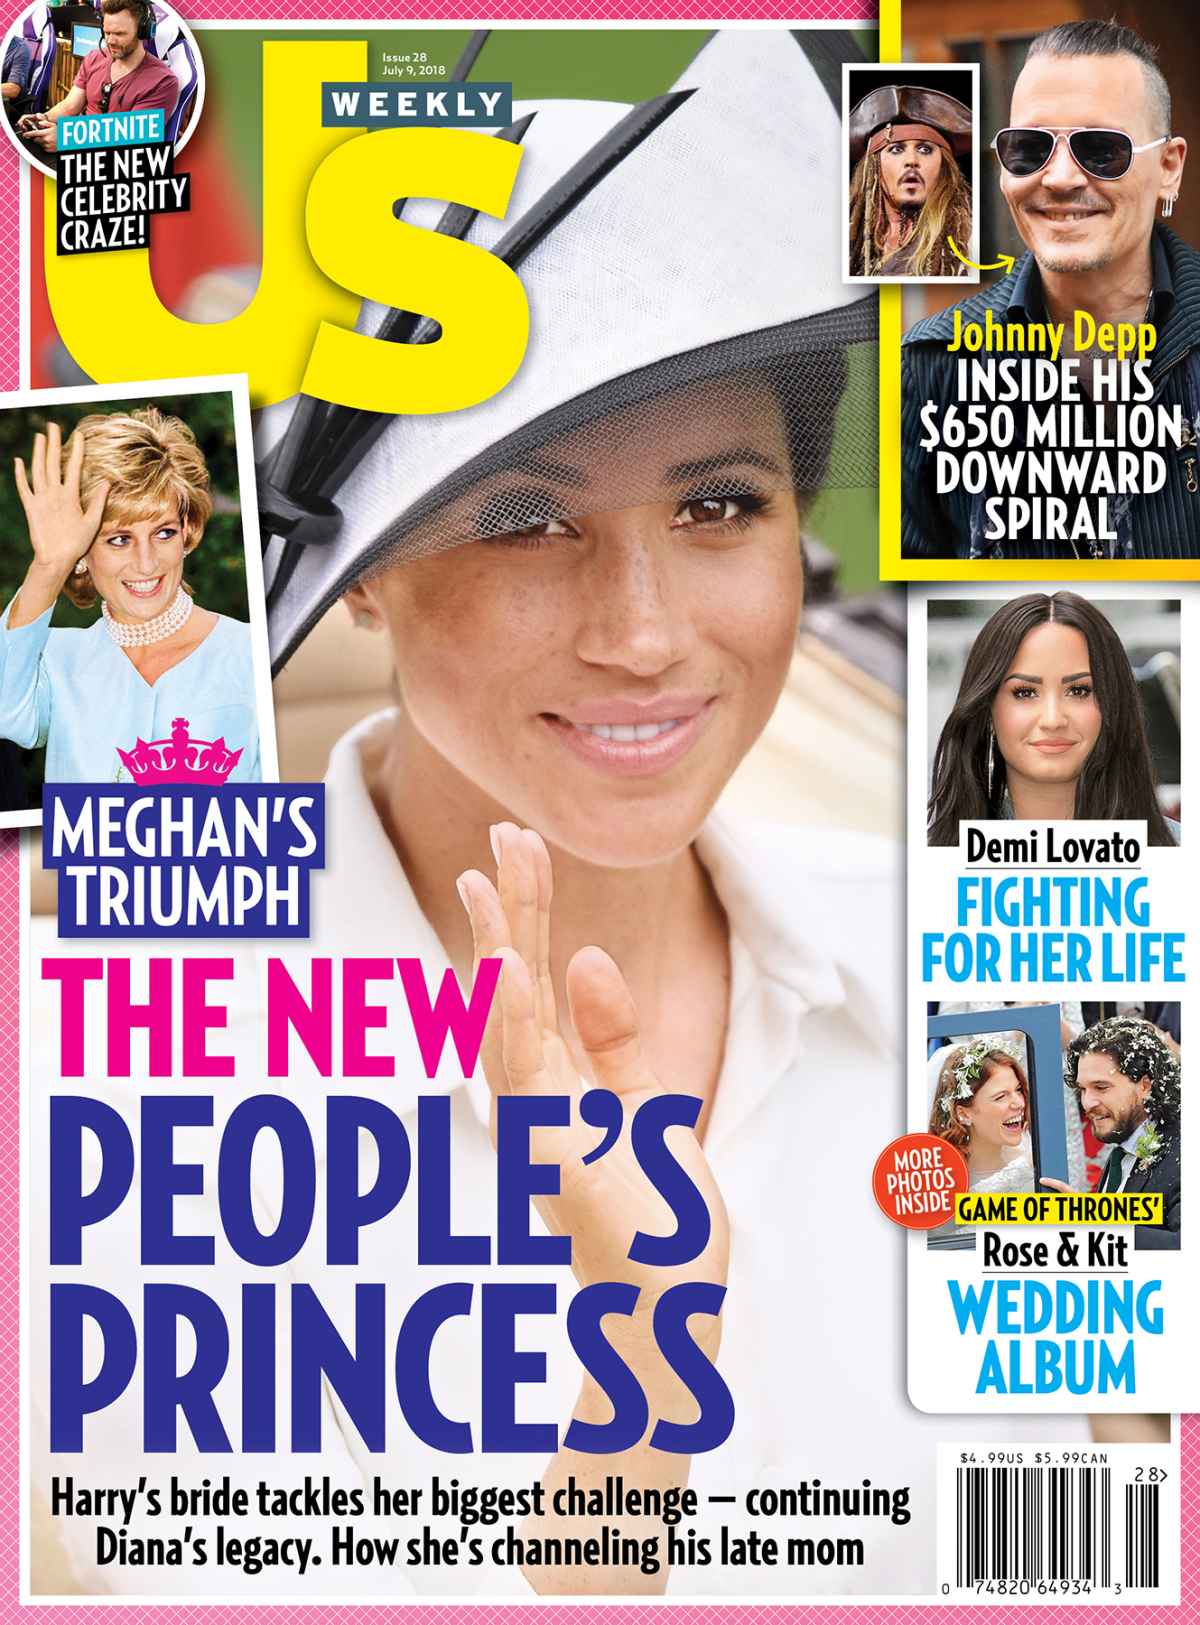 Queen Elizabeth II News - Us Weekly